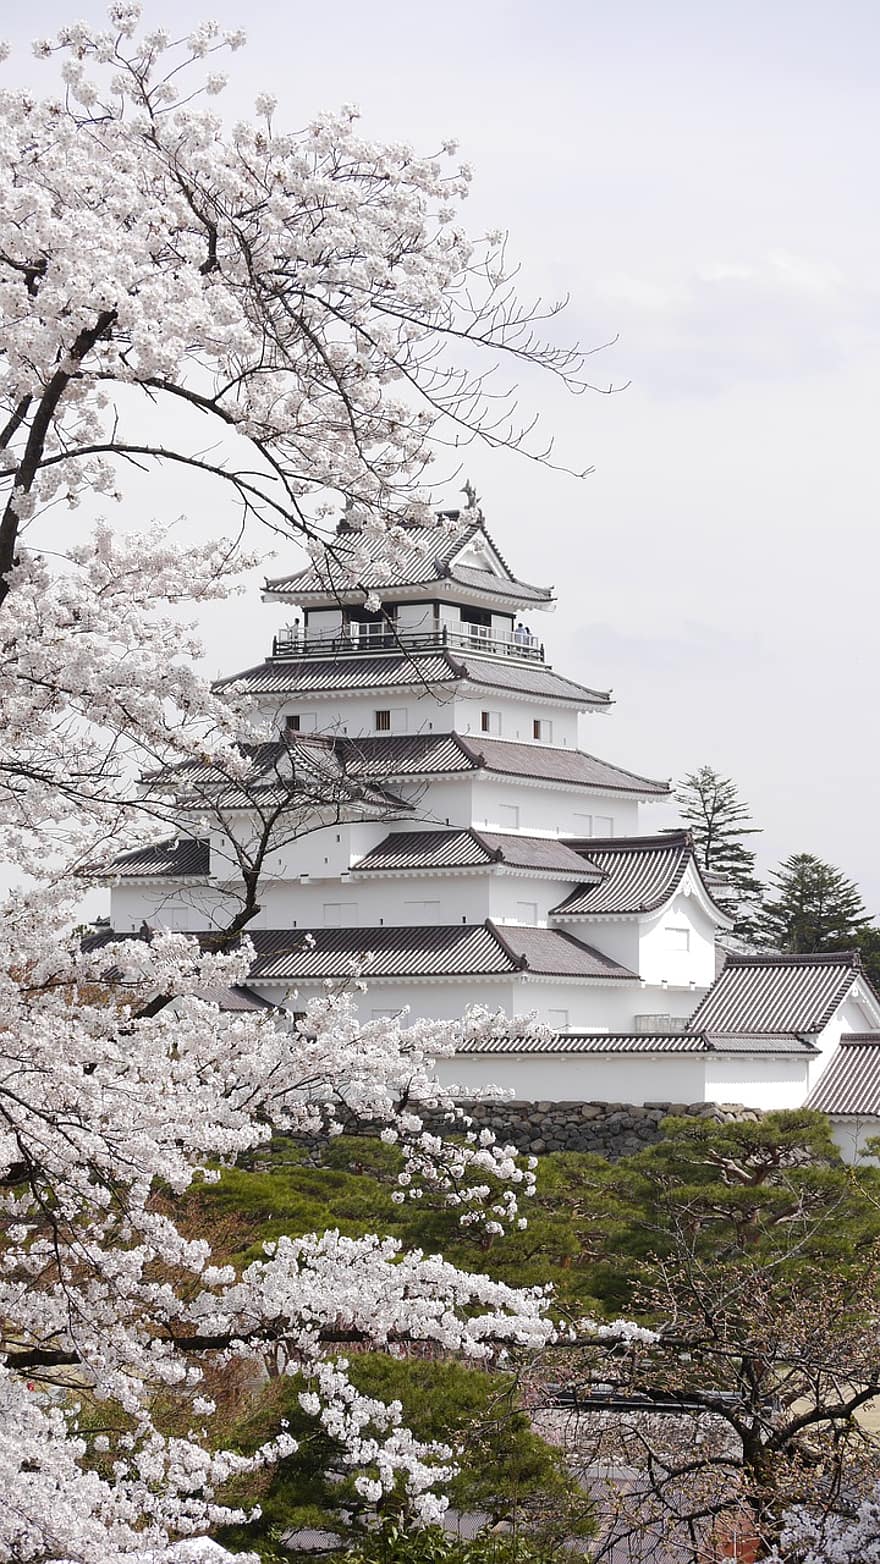 Japonia, kwiaty wiśni, wiosna, zamek tsuruga-jo, fukushima, aizu, Aizuwakamatsu, atrakcja turystyczna, punkt orientacyjny, atrakcje turystyczne, budynek